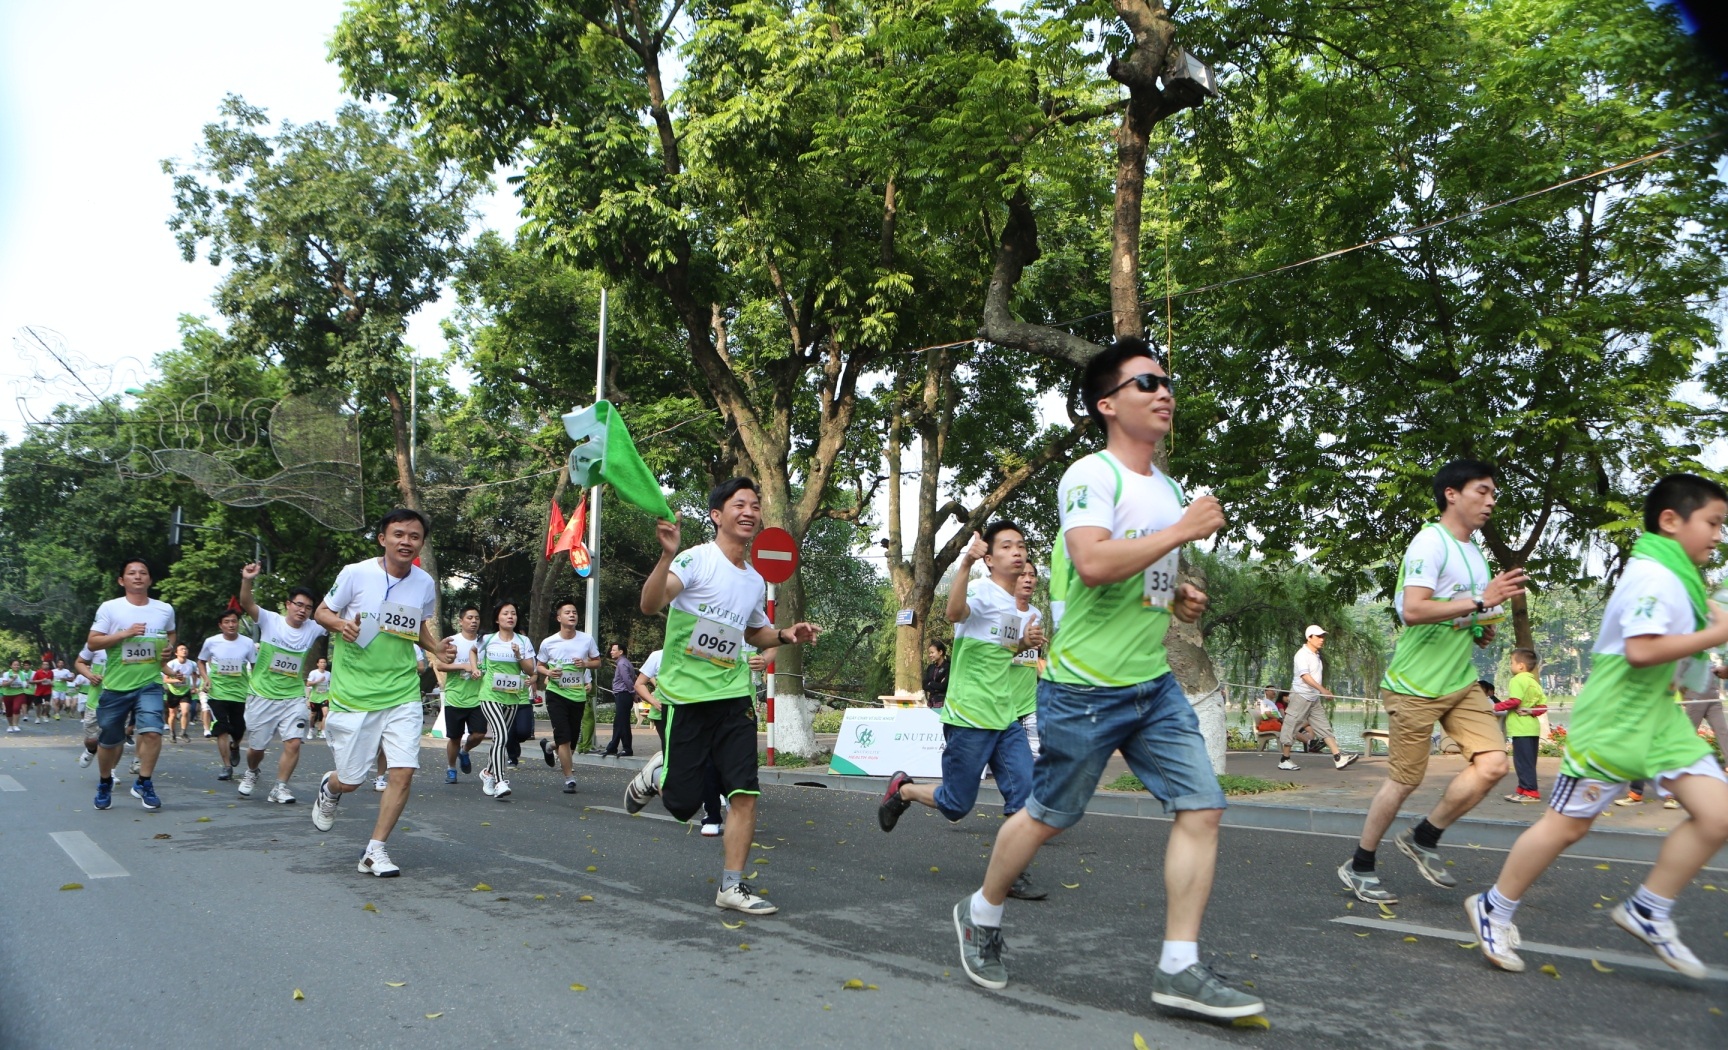 3.000
người dân Thủ đô đã tham dự “Ngày Chạy Vì Sức Khỏe 2015”